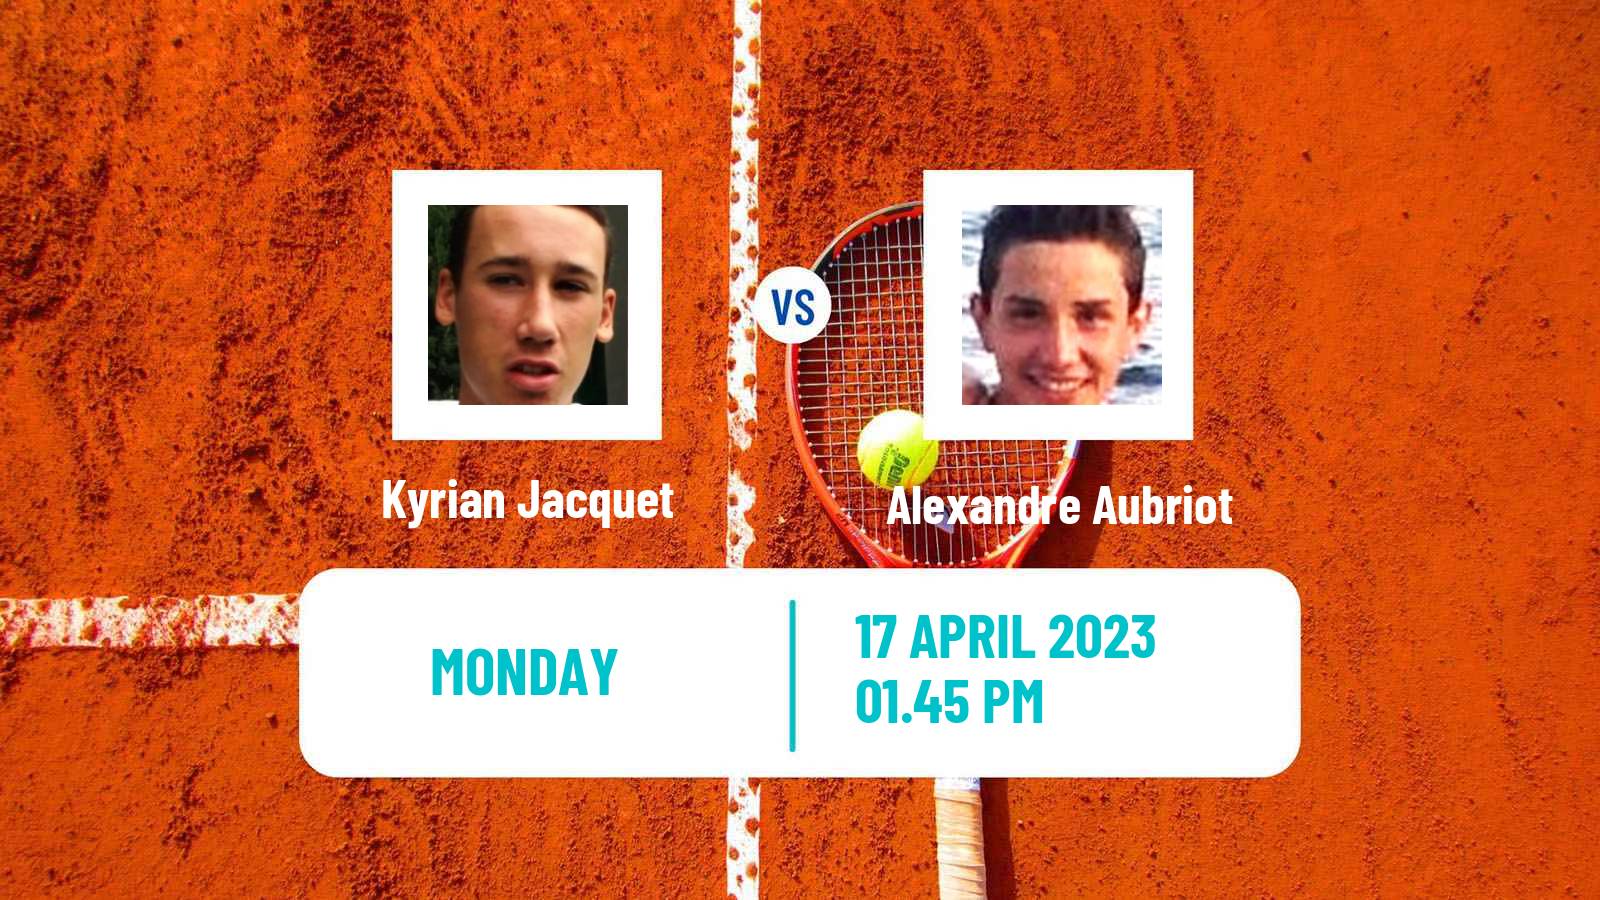 Tennis ATP Challenger Kyrian Jacquet - Alexandre Aubriot